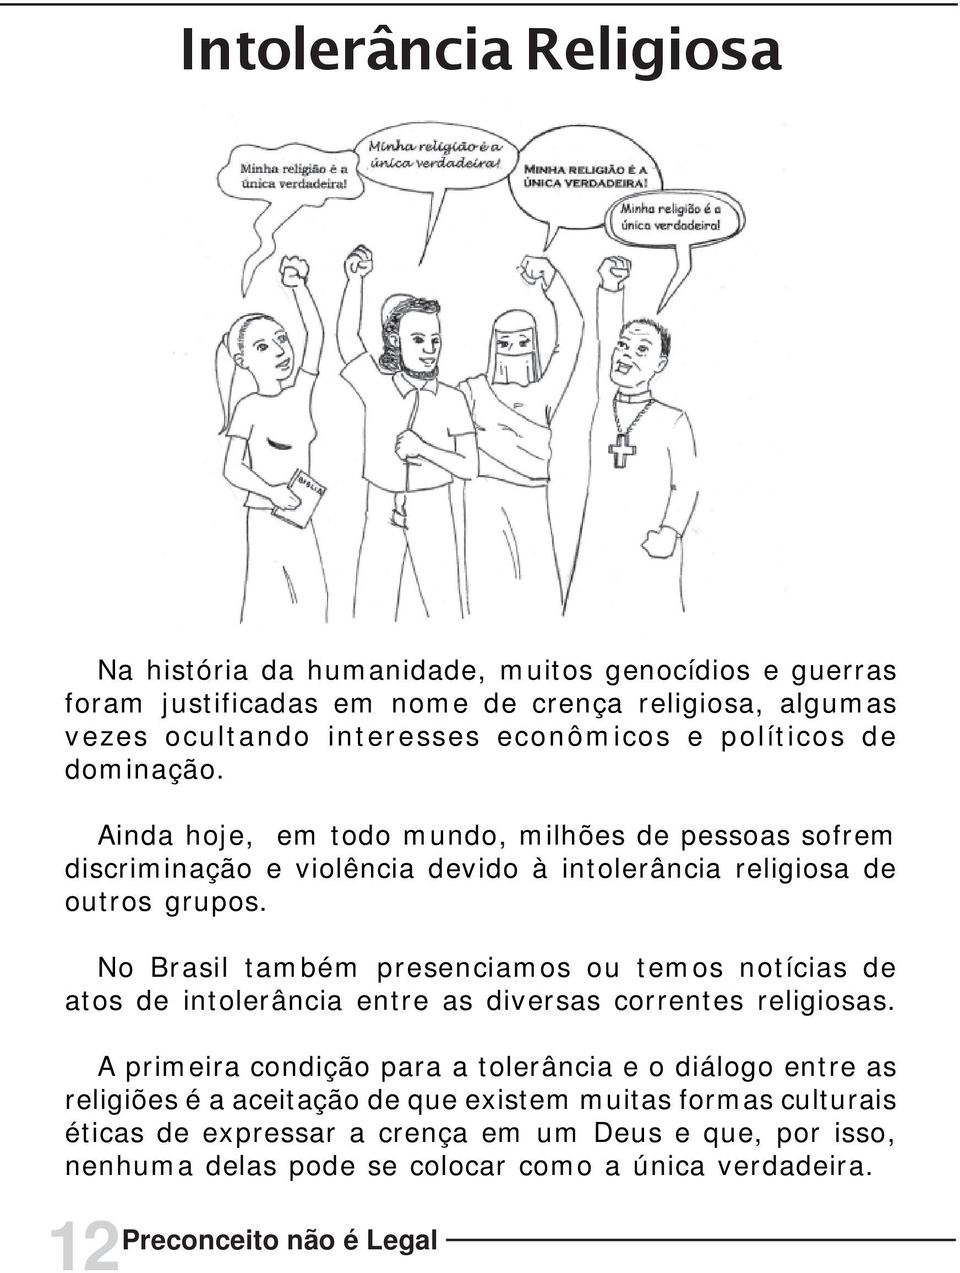 No Brasil também presenciamos ou temos notícias de atos de intolerância entre as diversas correntes religiosas.